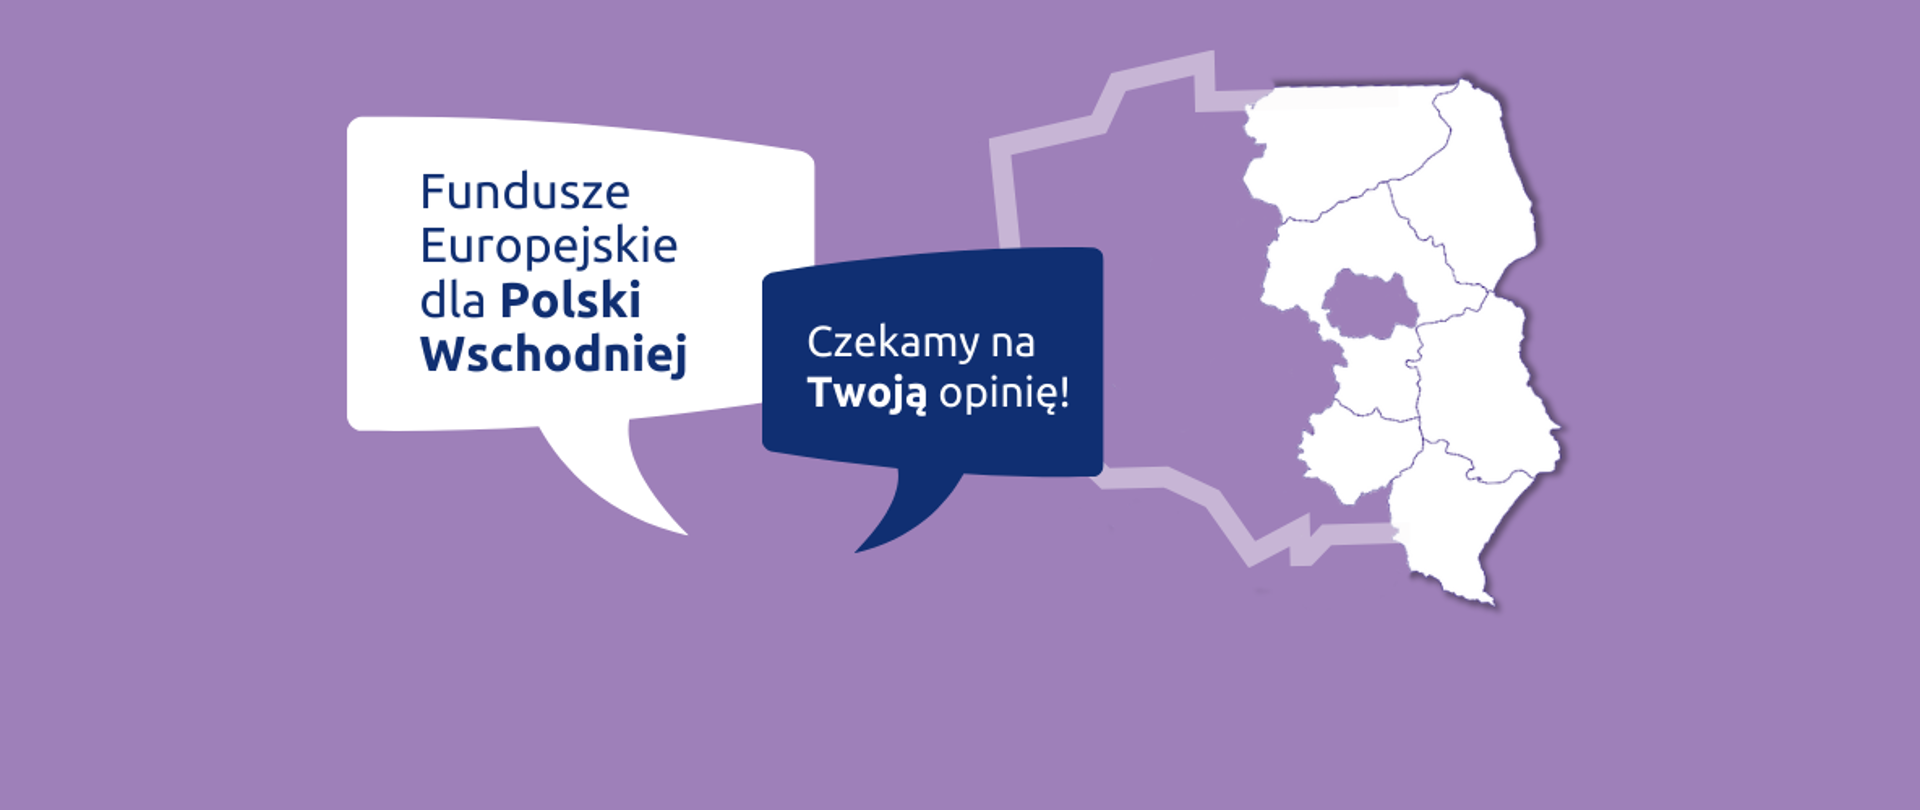 Grafika z konturową mapą Polski i tekstem: Fundusze Europejskie dla Polski Wschodniej, czekamy na Twoją opinię.